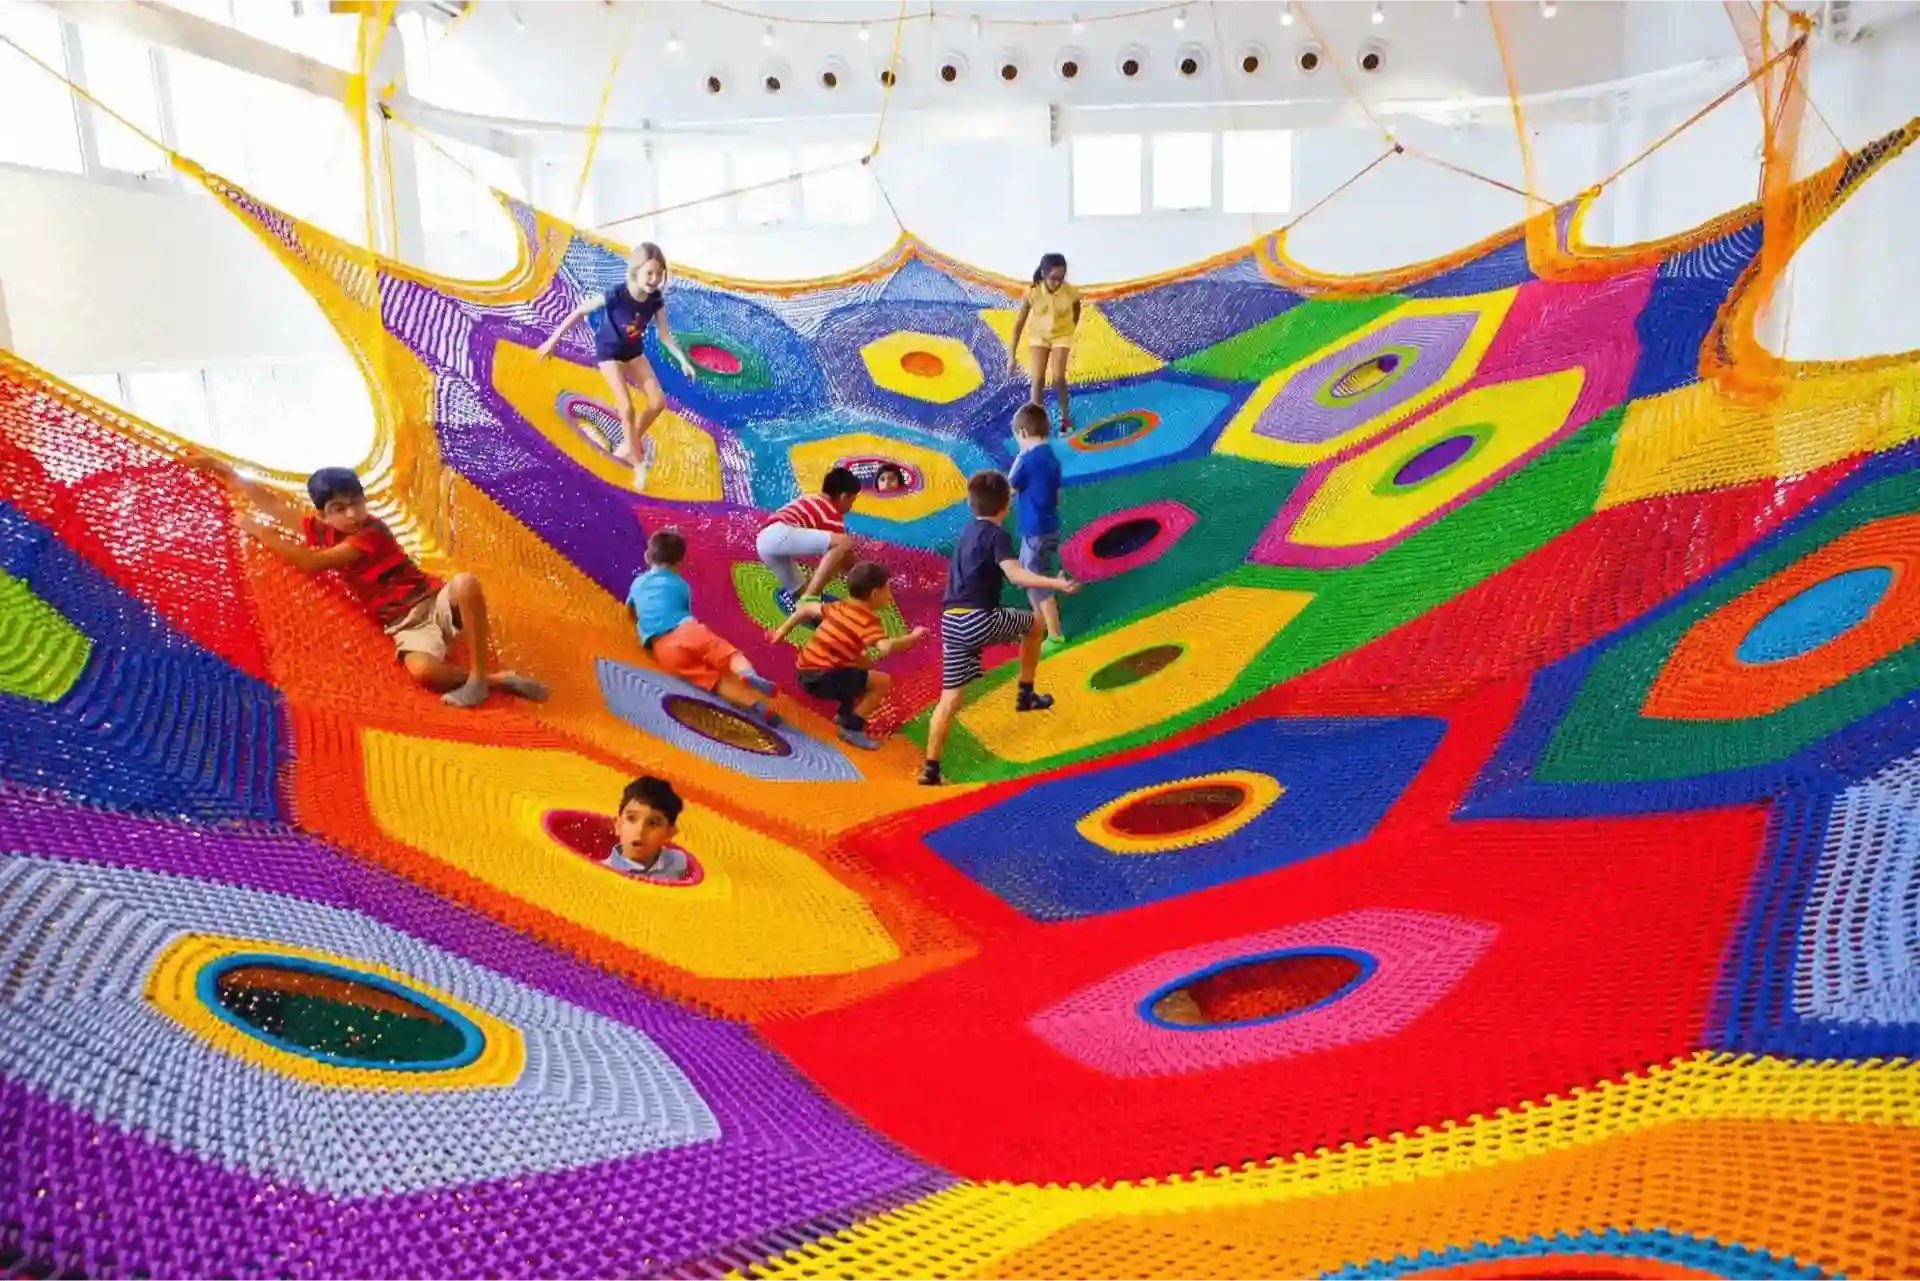 Oli Oli to Find Amazing Playgrounds in Dubai 